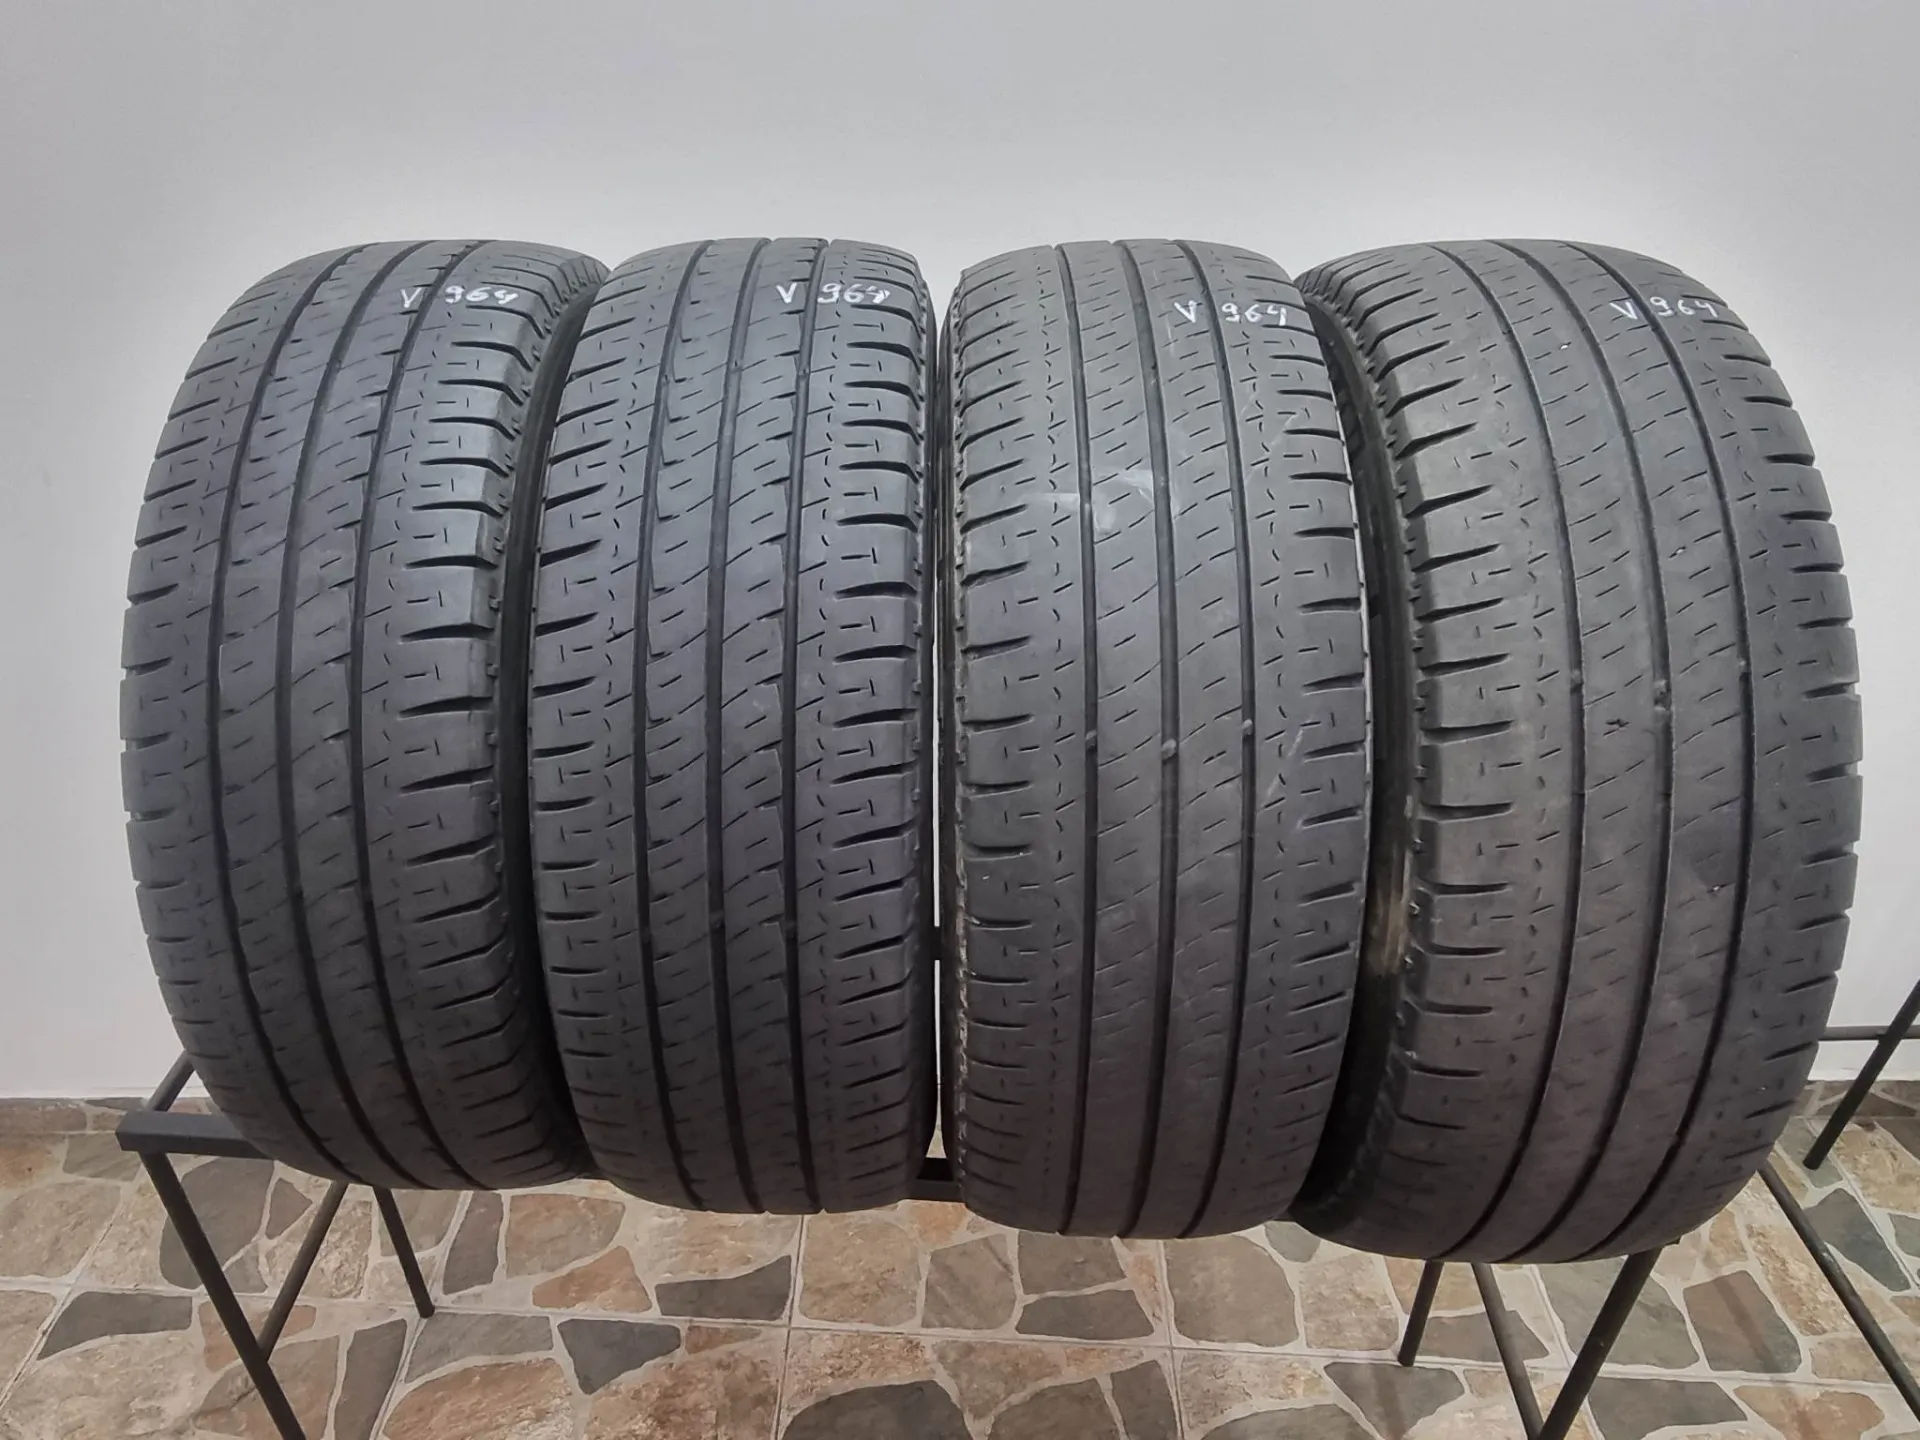 4бр летни гуми за бус 215/65/16С Michelin V964 5